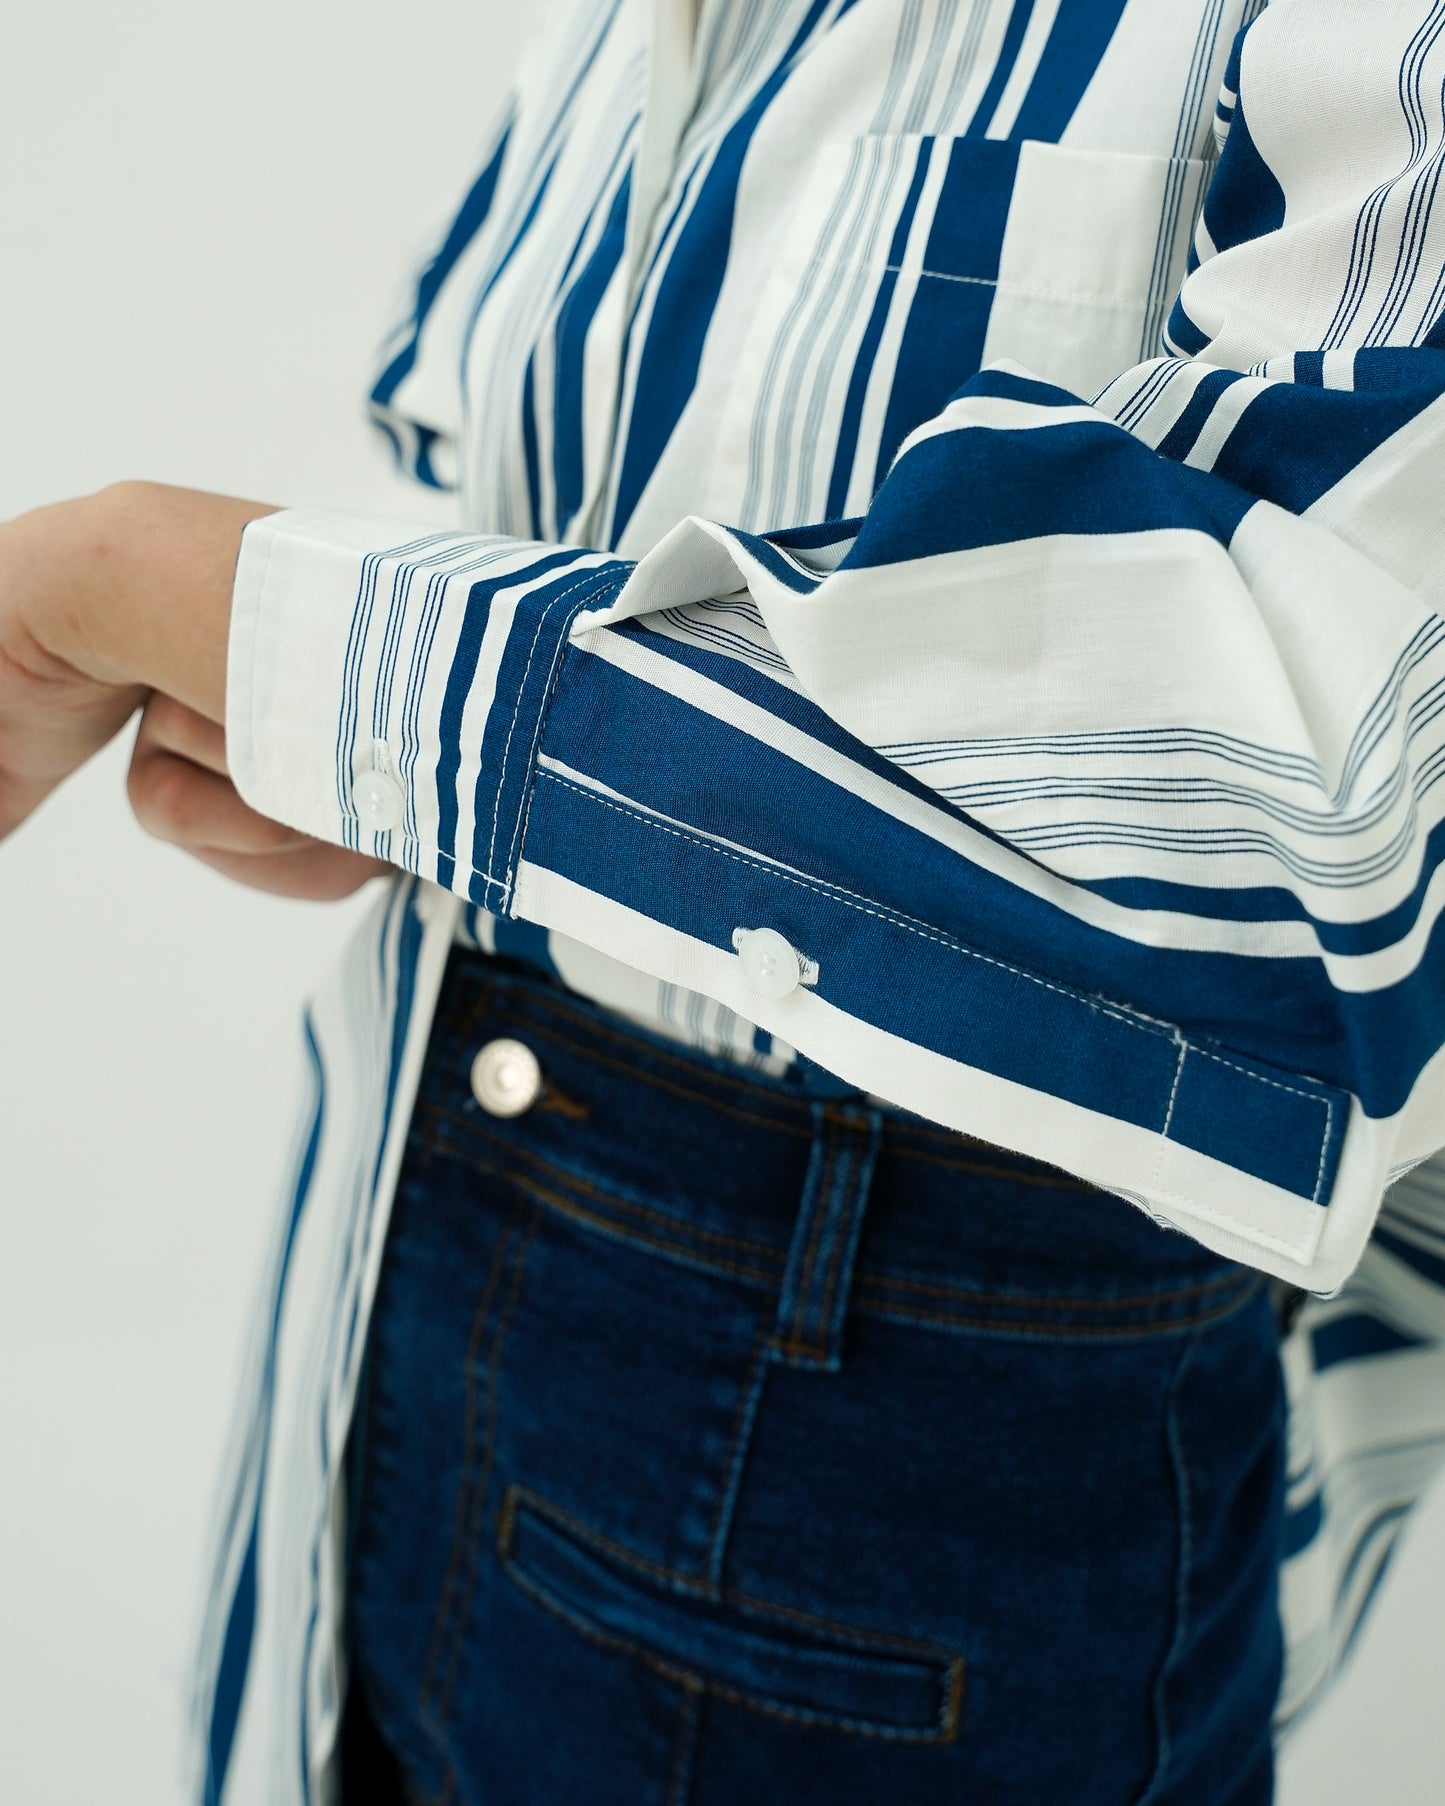 Tania Basic Oversized Shirt with Pocket Striped Khaki